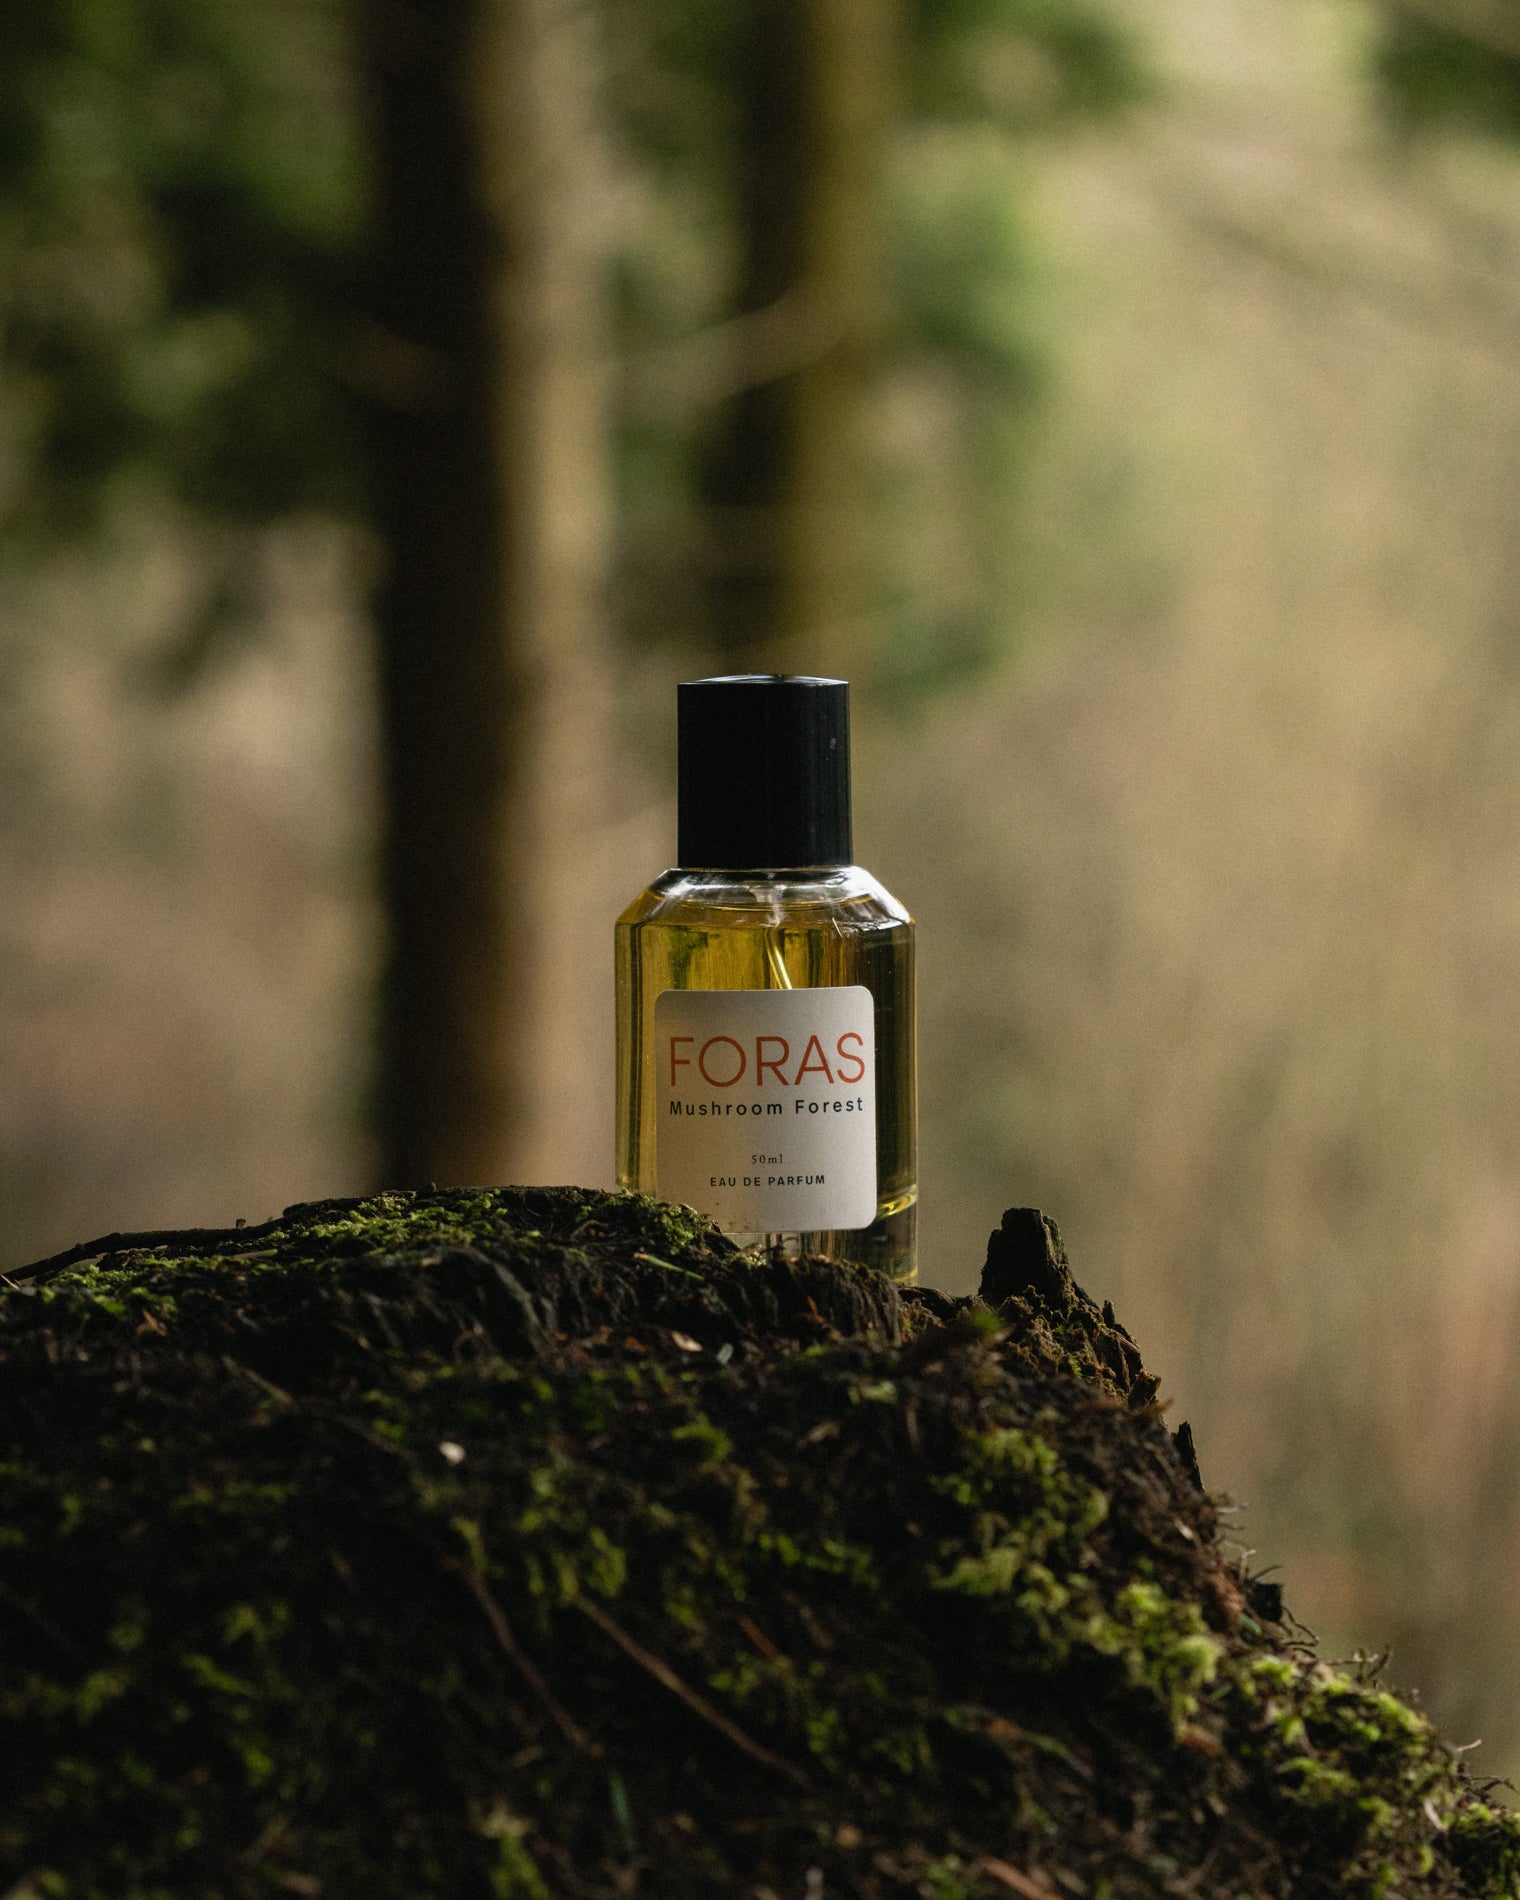 Mushroom Forest fragrance - 50ml bottle in the woods